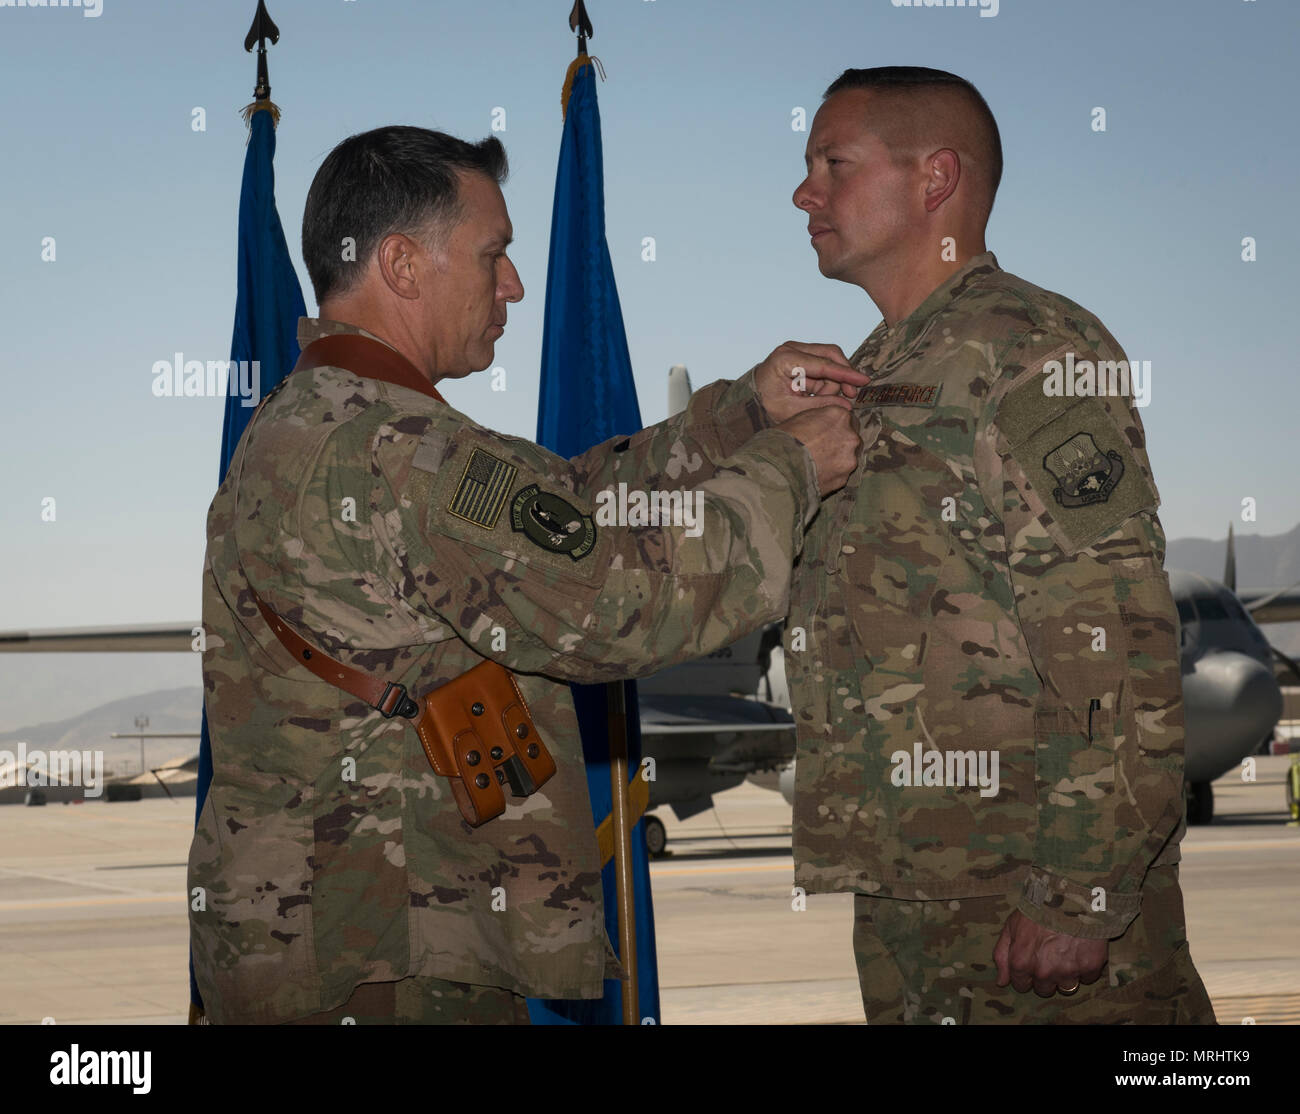 El Coronel Eric Soto, el saliente comandante de grupo de mantenimiento expedicionaria 455a, recibe la medalla de Estrella de Bronce de Brig. Gen. Craig Baker, el comandante de ala expedicionaria aérea 455a, 455A EMXG durante la ceremonia de cambio de mando en el aeródromo de Bagram, Afganistán, 17 de junio de 2017. Soto sirvió como comandante de la 455EMXG durante los últimos 12 meses. (Ee.Uu. Foto de la fuerza aérea por el Sargento. Benjamin Gonsier) Foto de stock